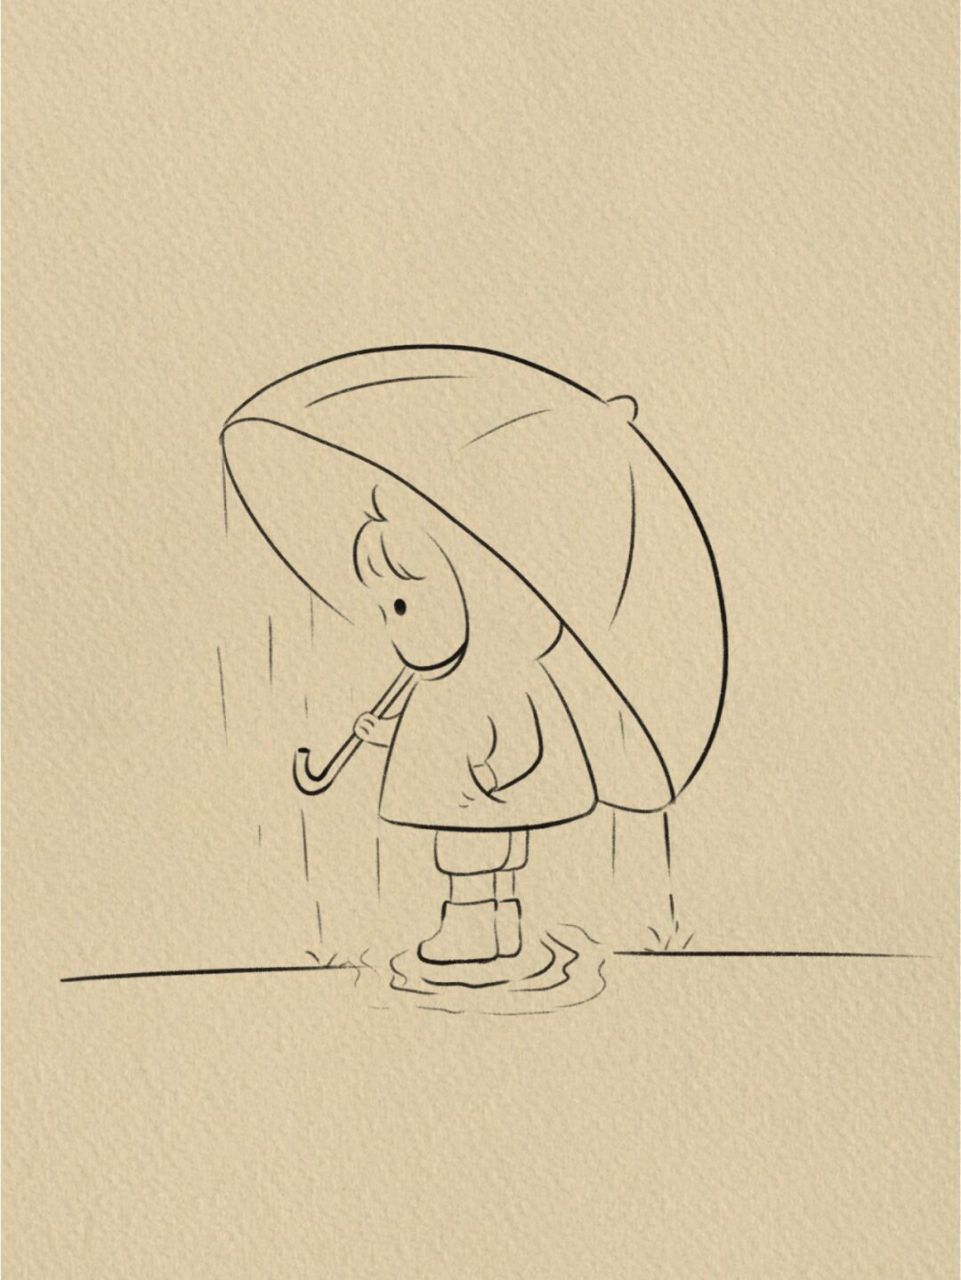 简笔画,附过程‖(5) 一个人撑伞的日子也要顺顺利利 临摹 